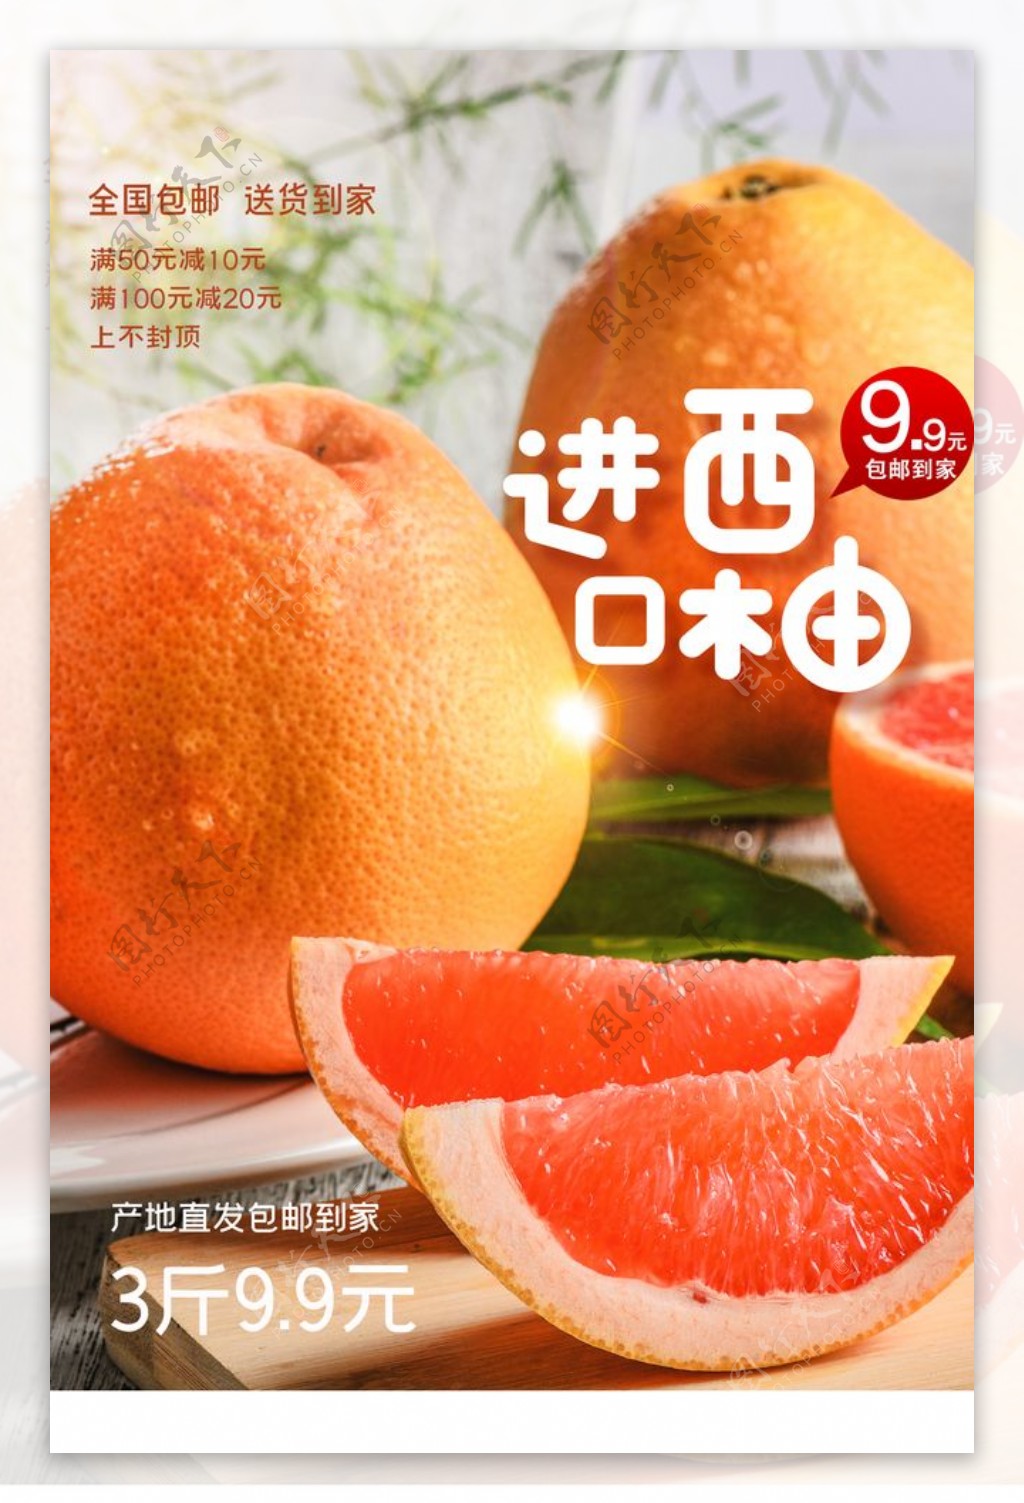 进口西柚水果活动宣传海报图片